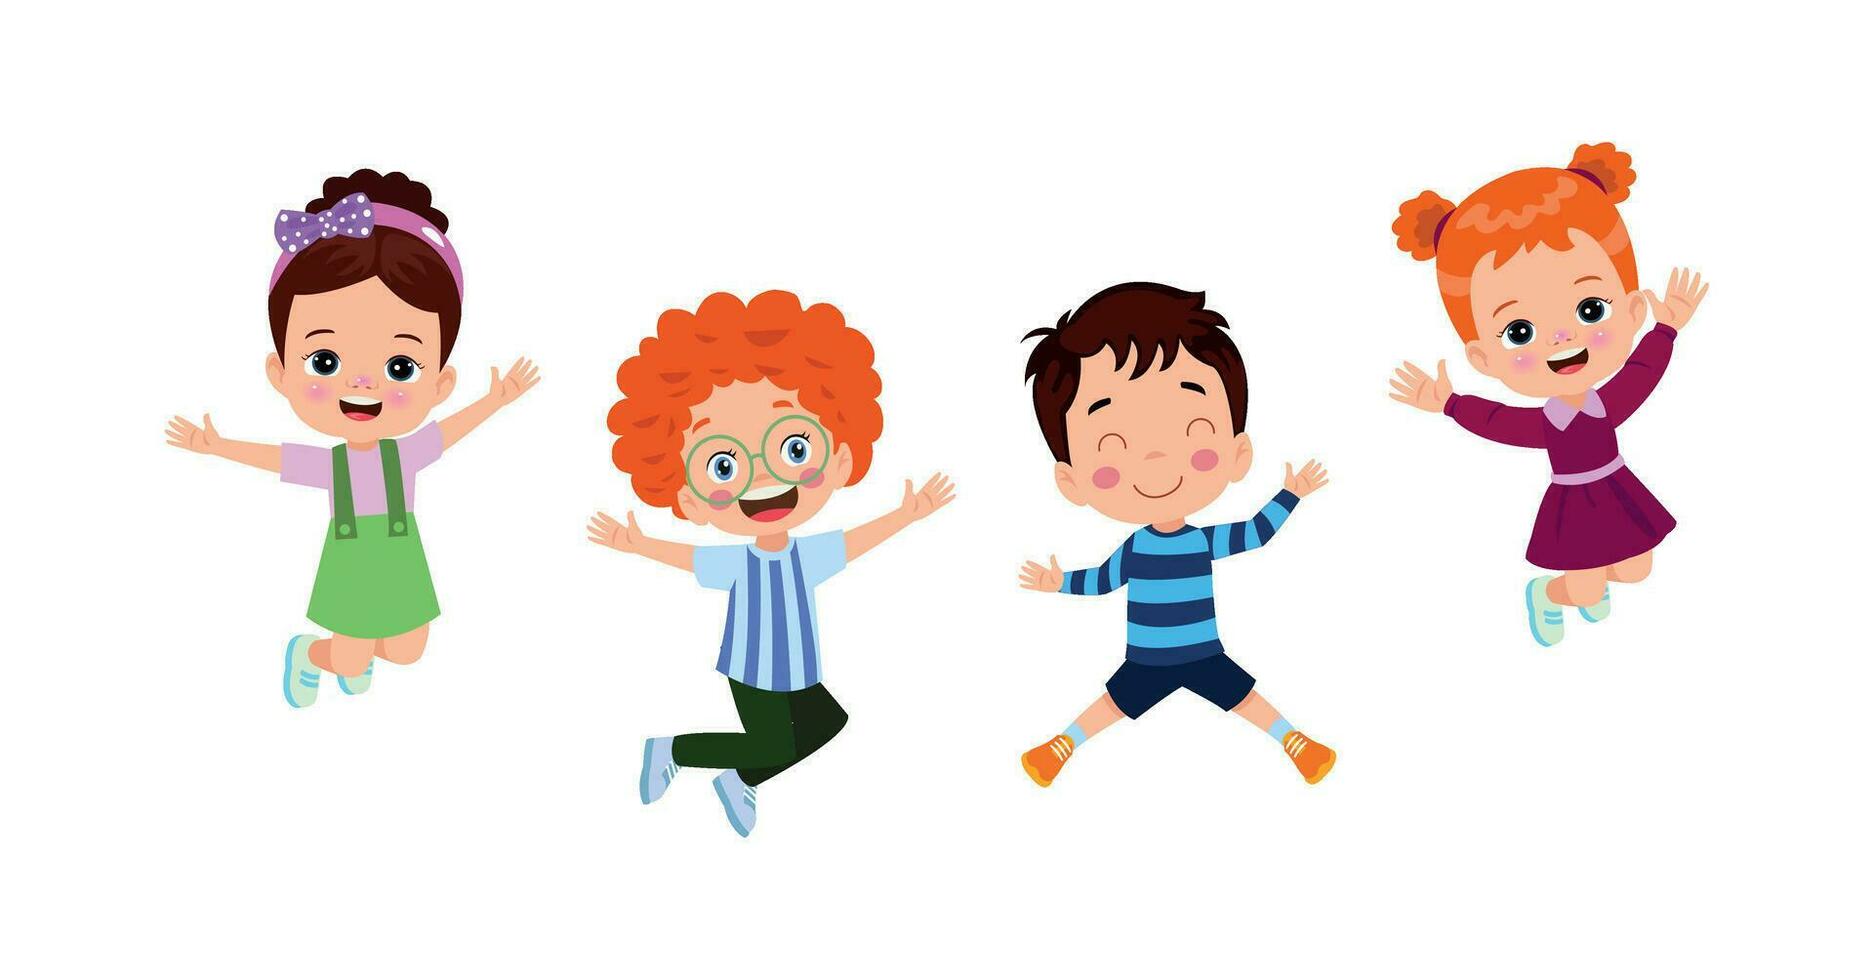 springende kinder. Fröhliche lustige Kinder, die in verschiedenen Action-Posen spielen und springen, bilden kleine Team-Vektorfiguren. illustration von kindern und kinderspaß und lächeln vektor